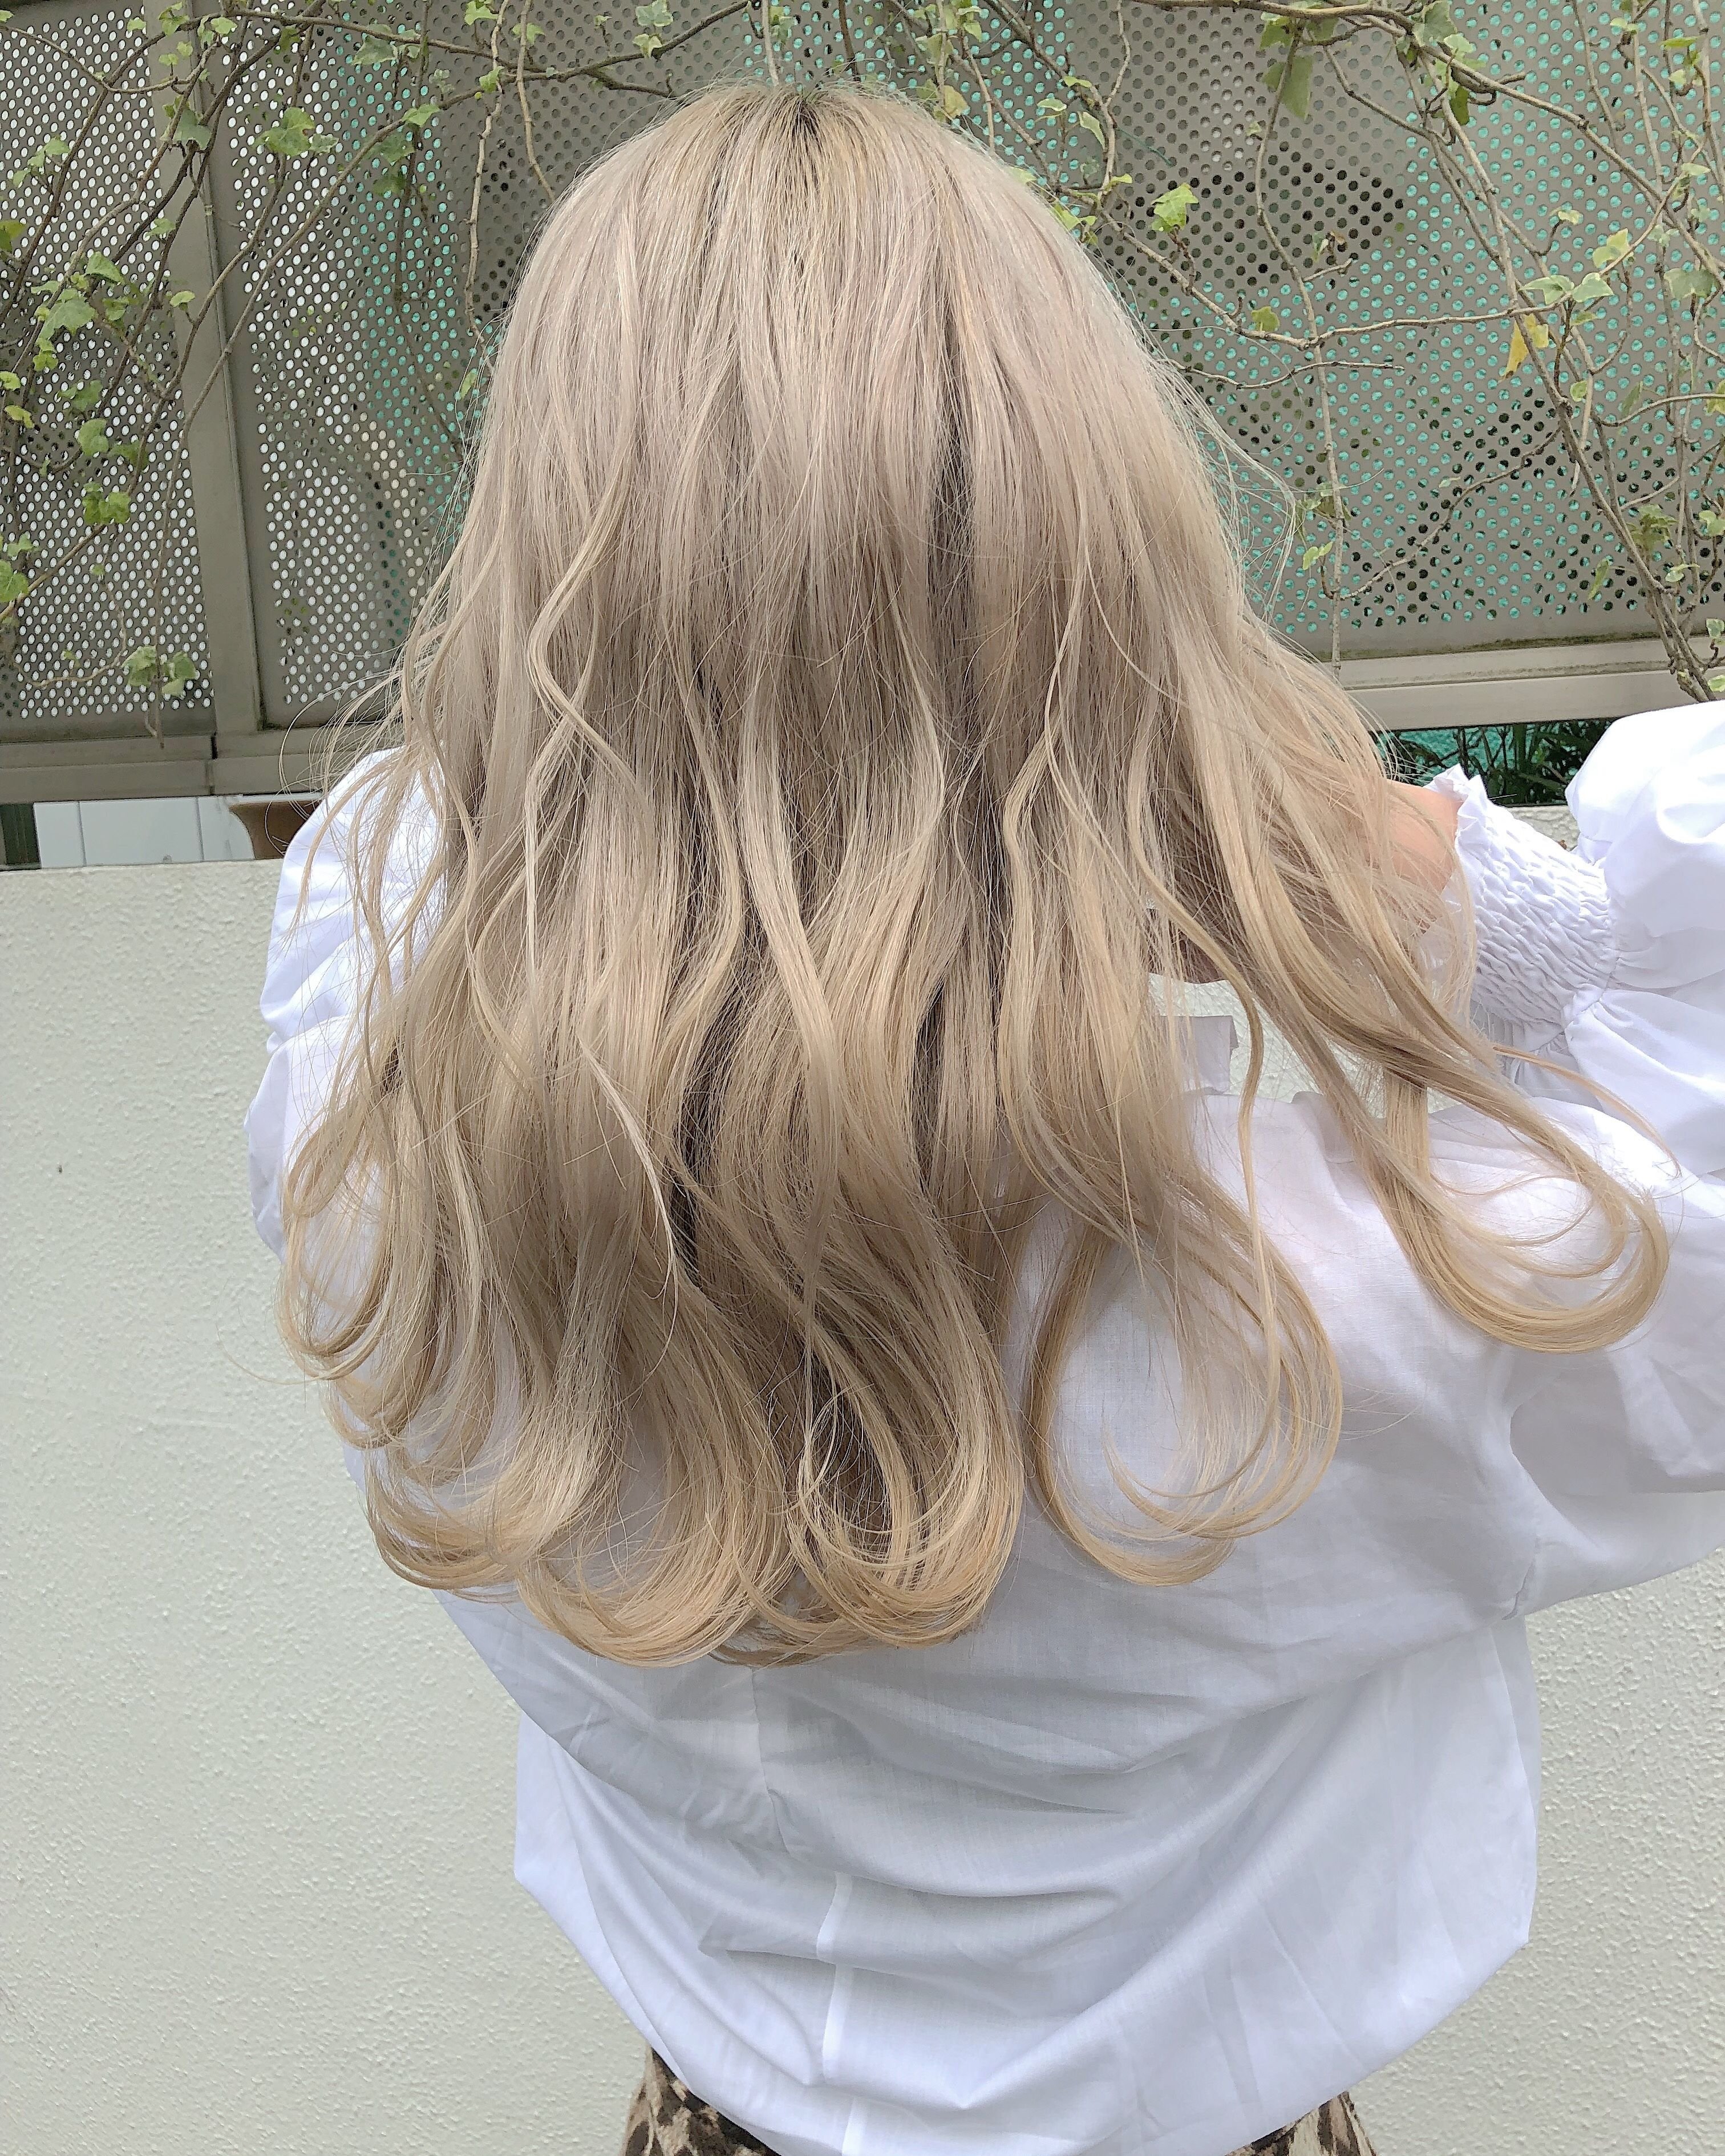 бежевый блондин цвет волос фото